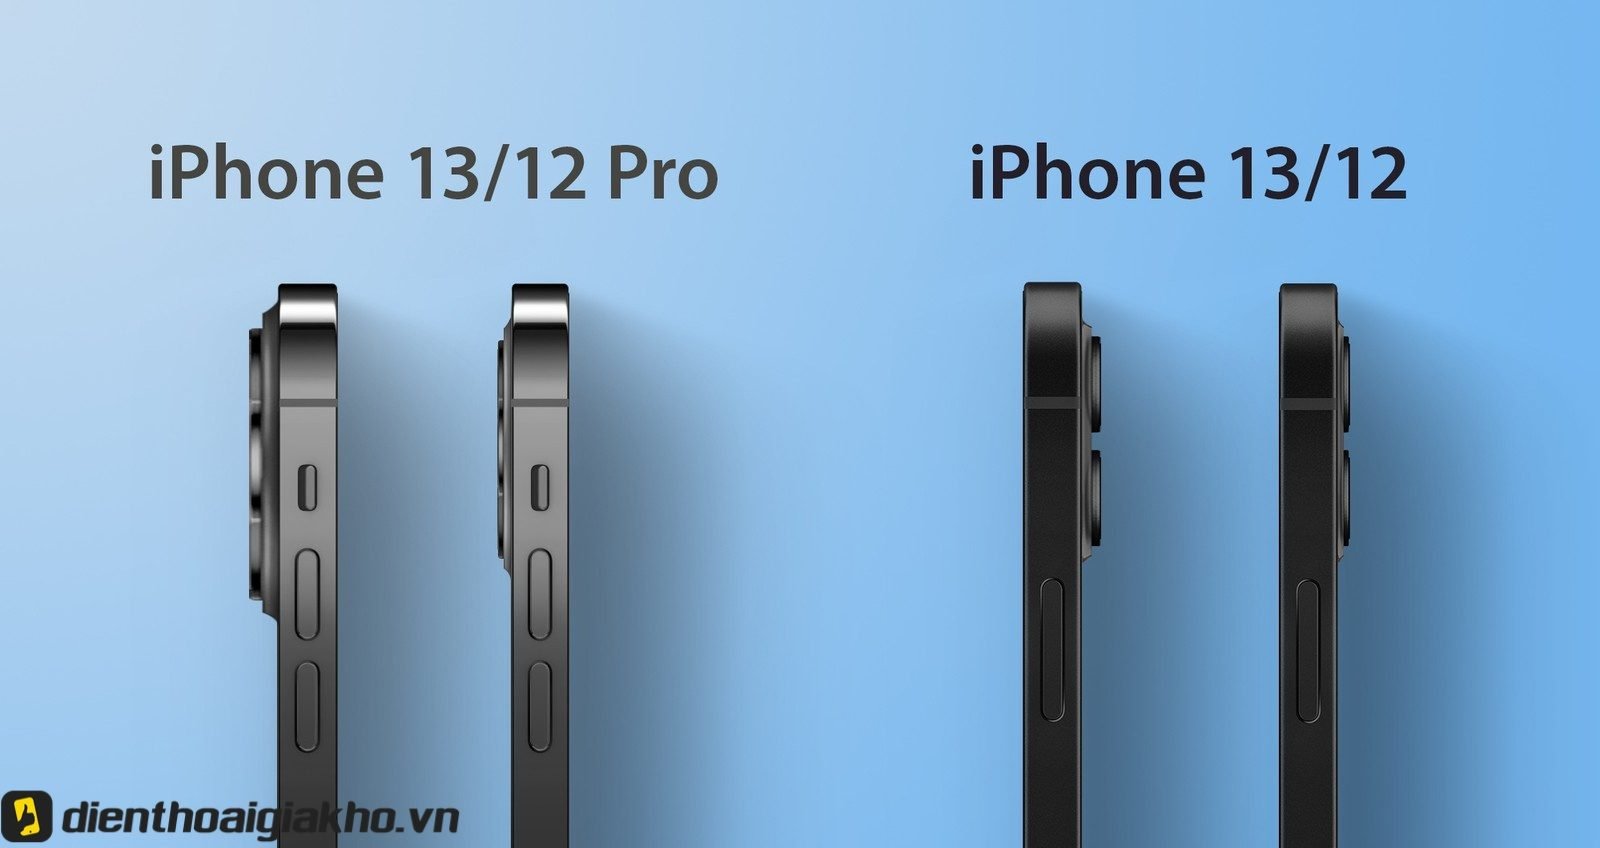 Màn hình iPhone 13 có kích thước bao nhiêu inch?